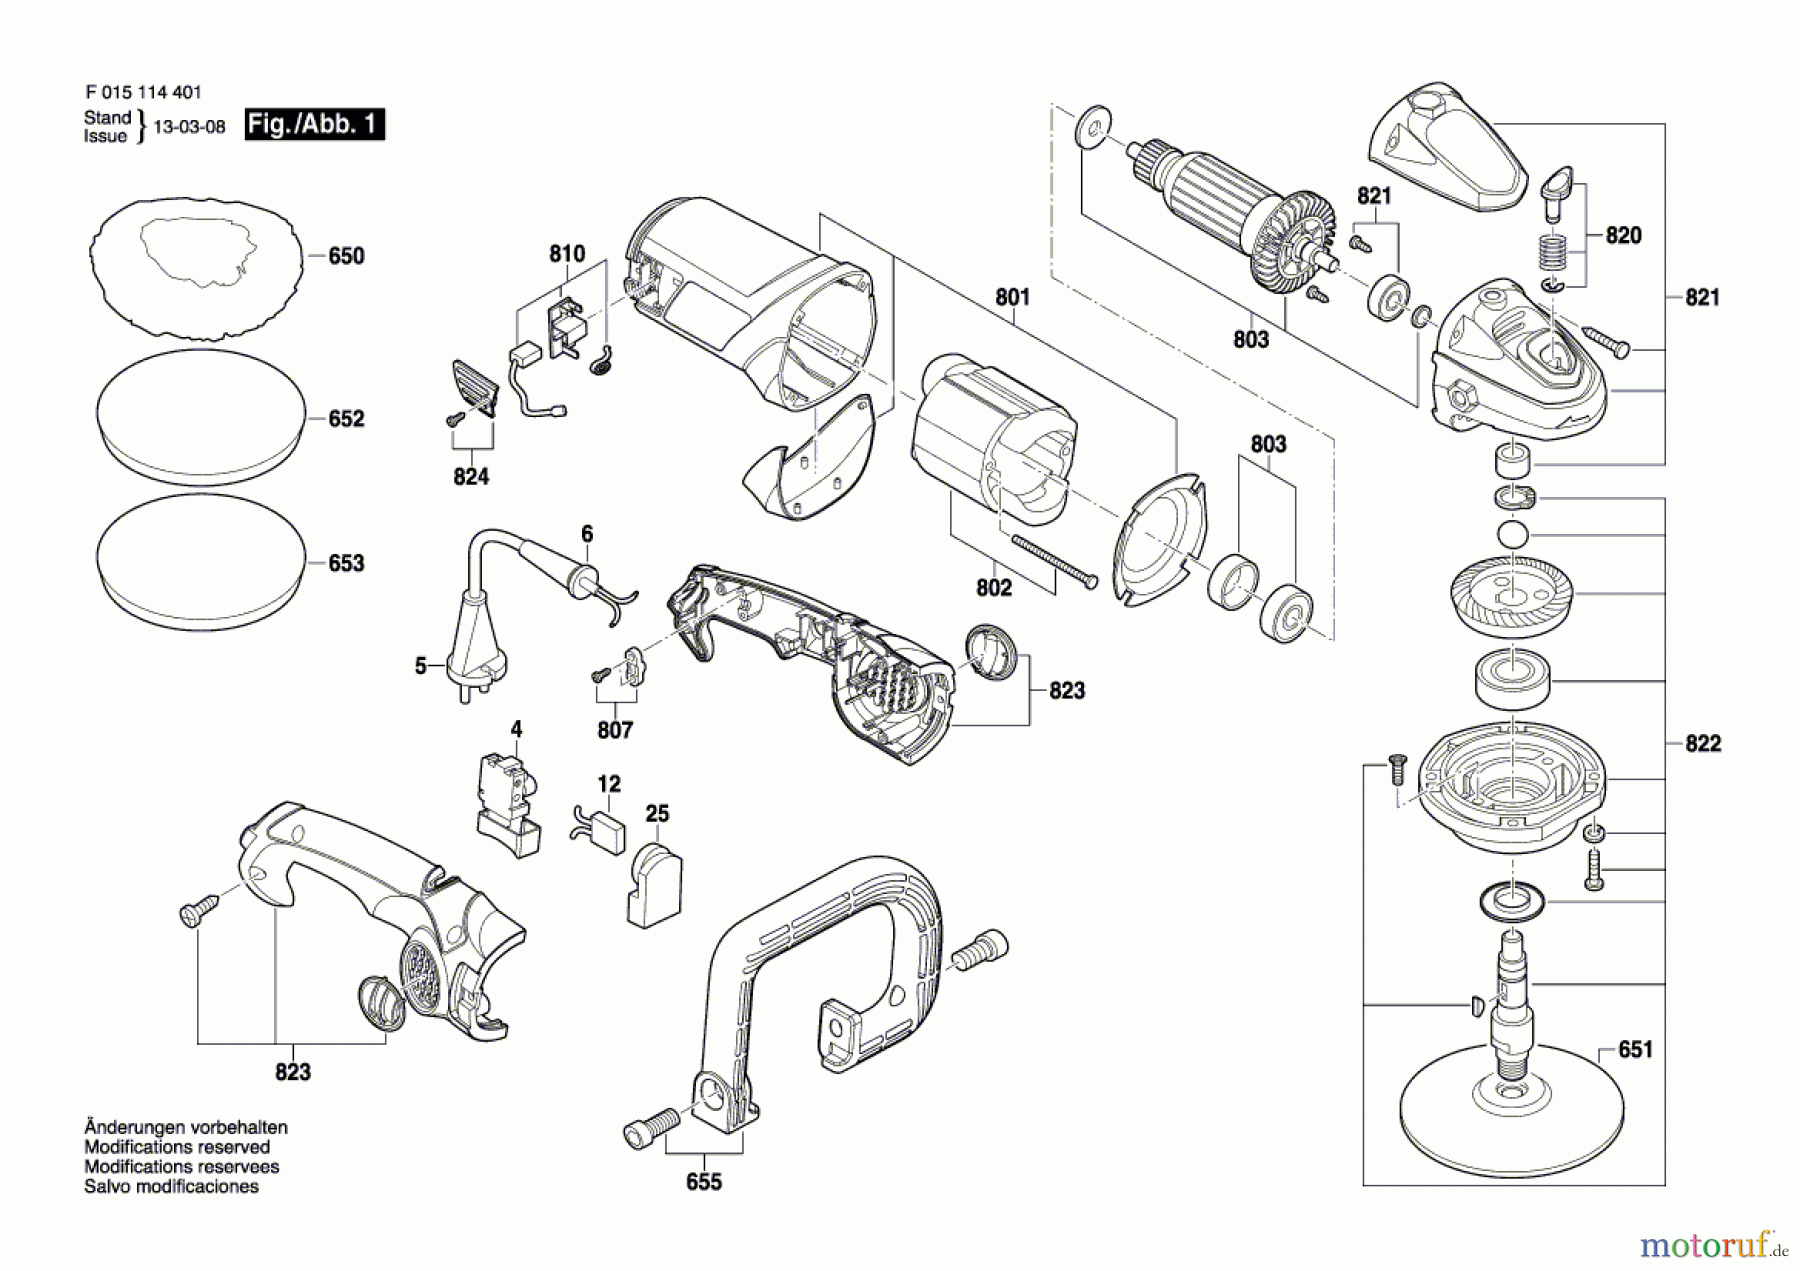  Bosch Werkzeug Winkelpolierer 1144 Seite 1